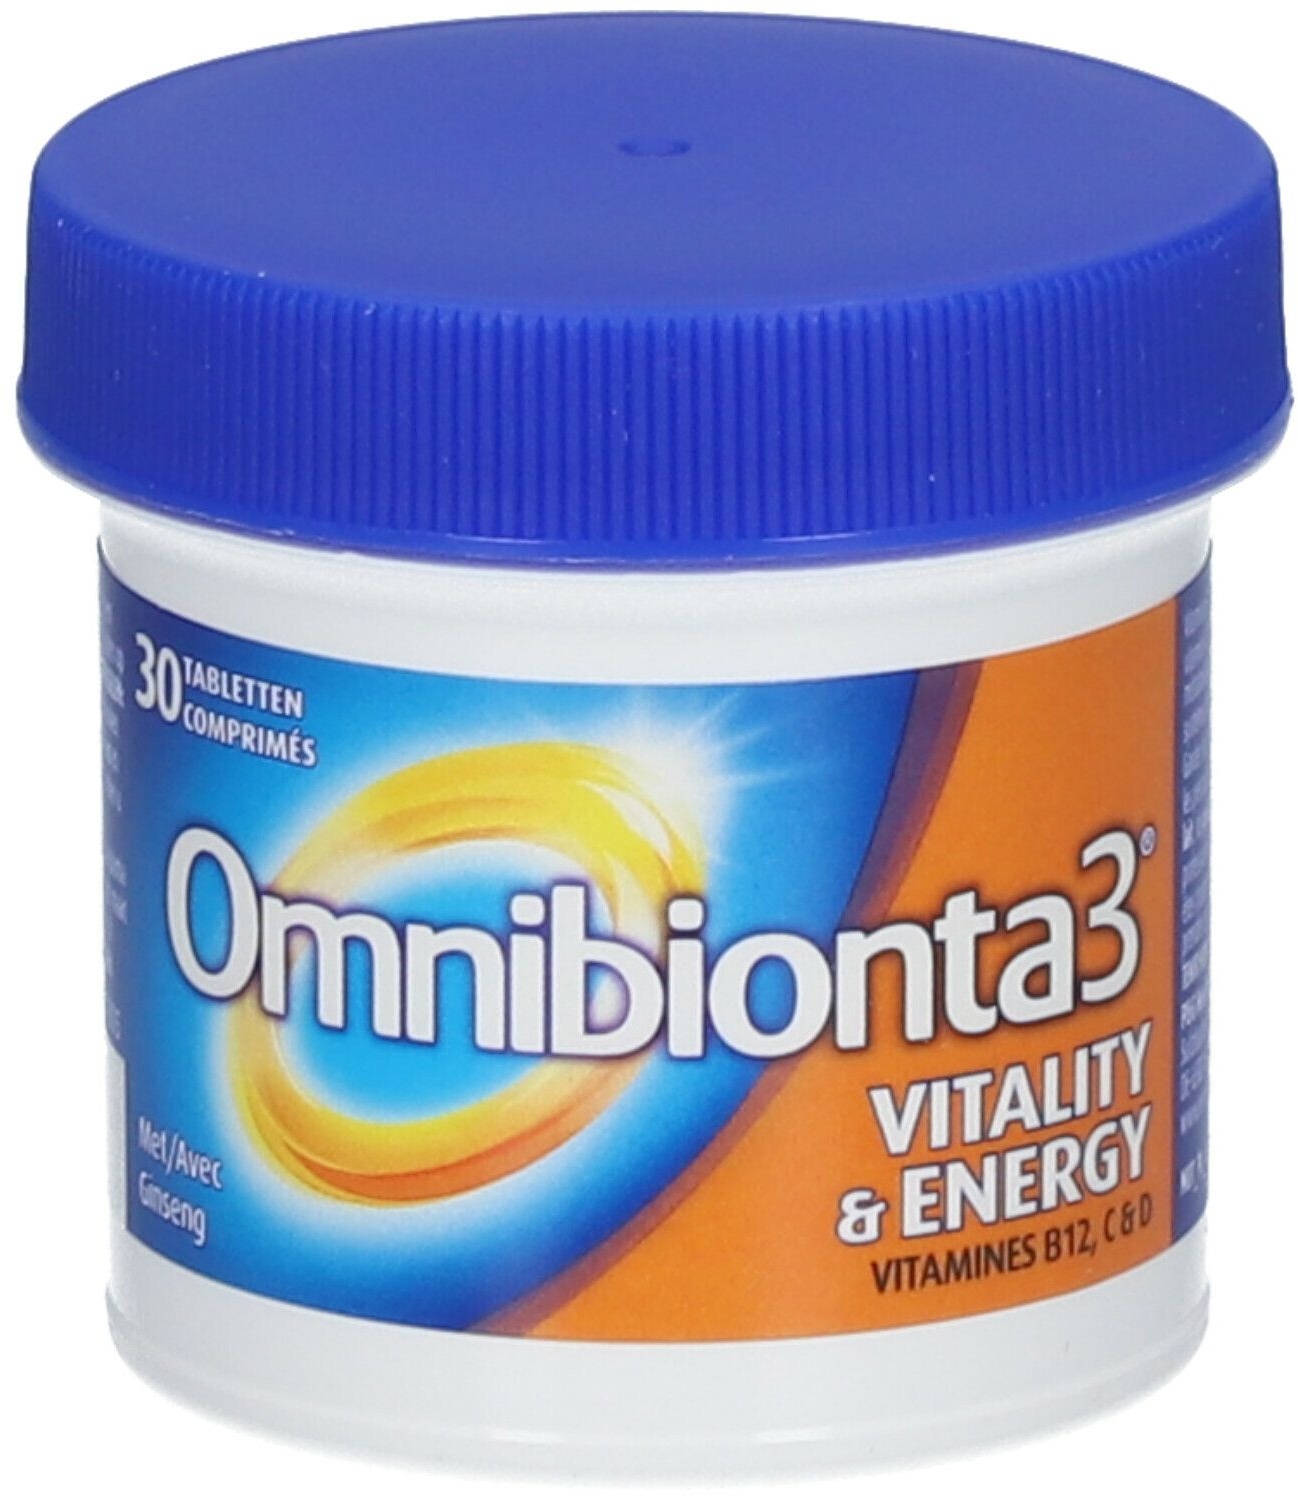 Omnibionta3® Vitalität und Energie